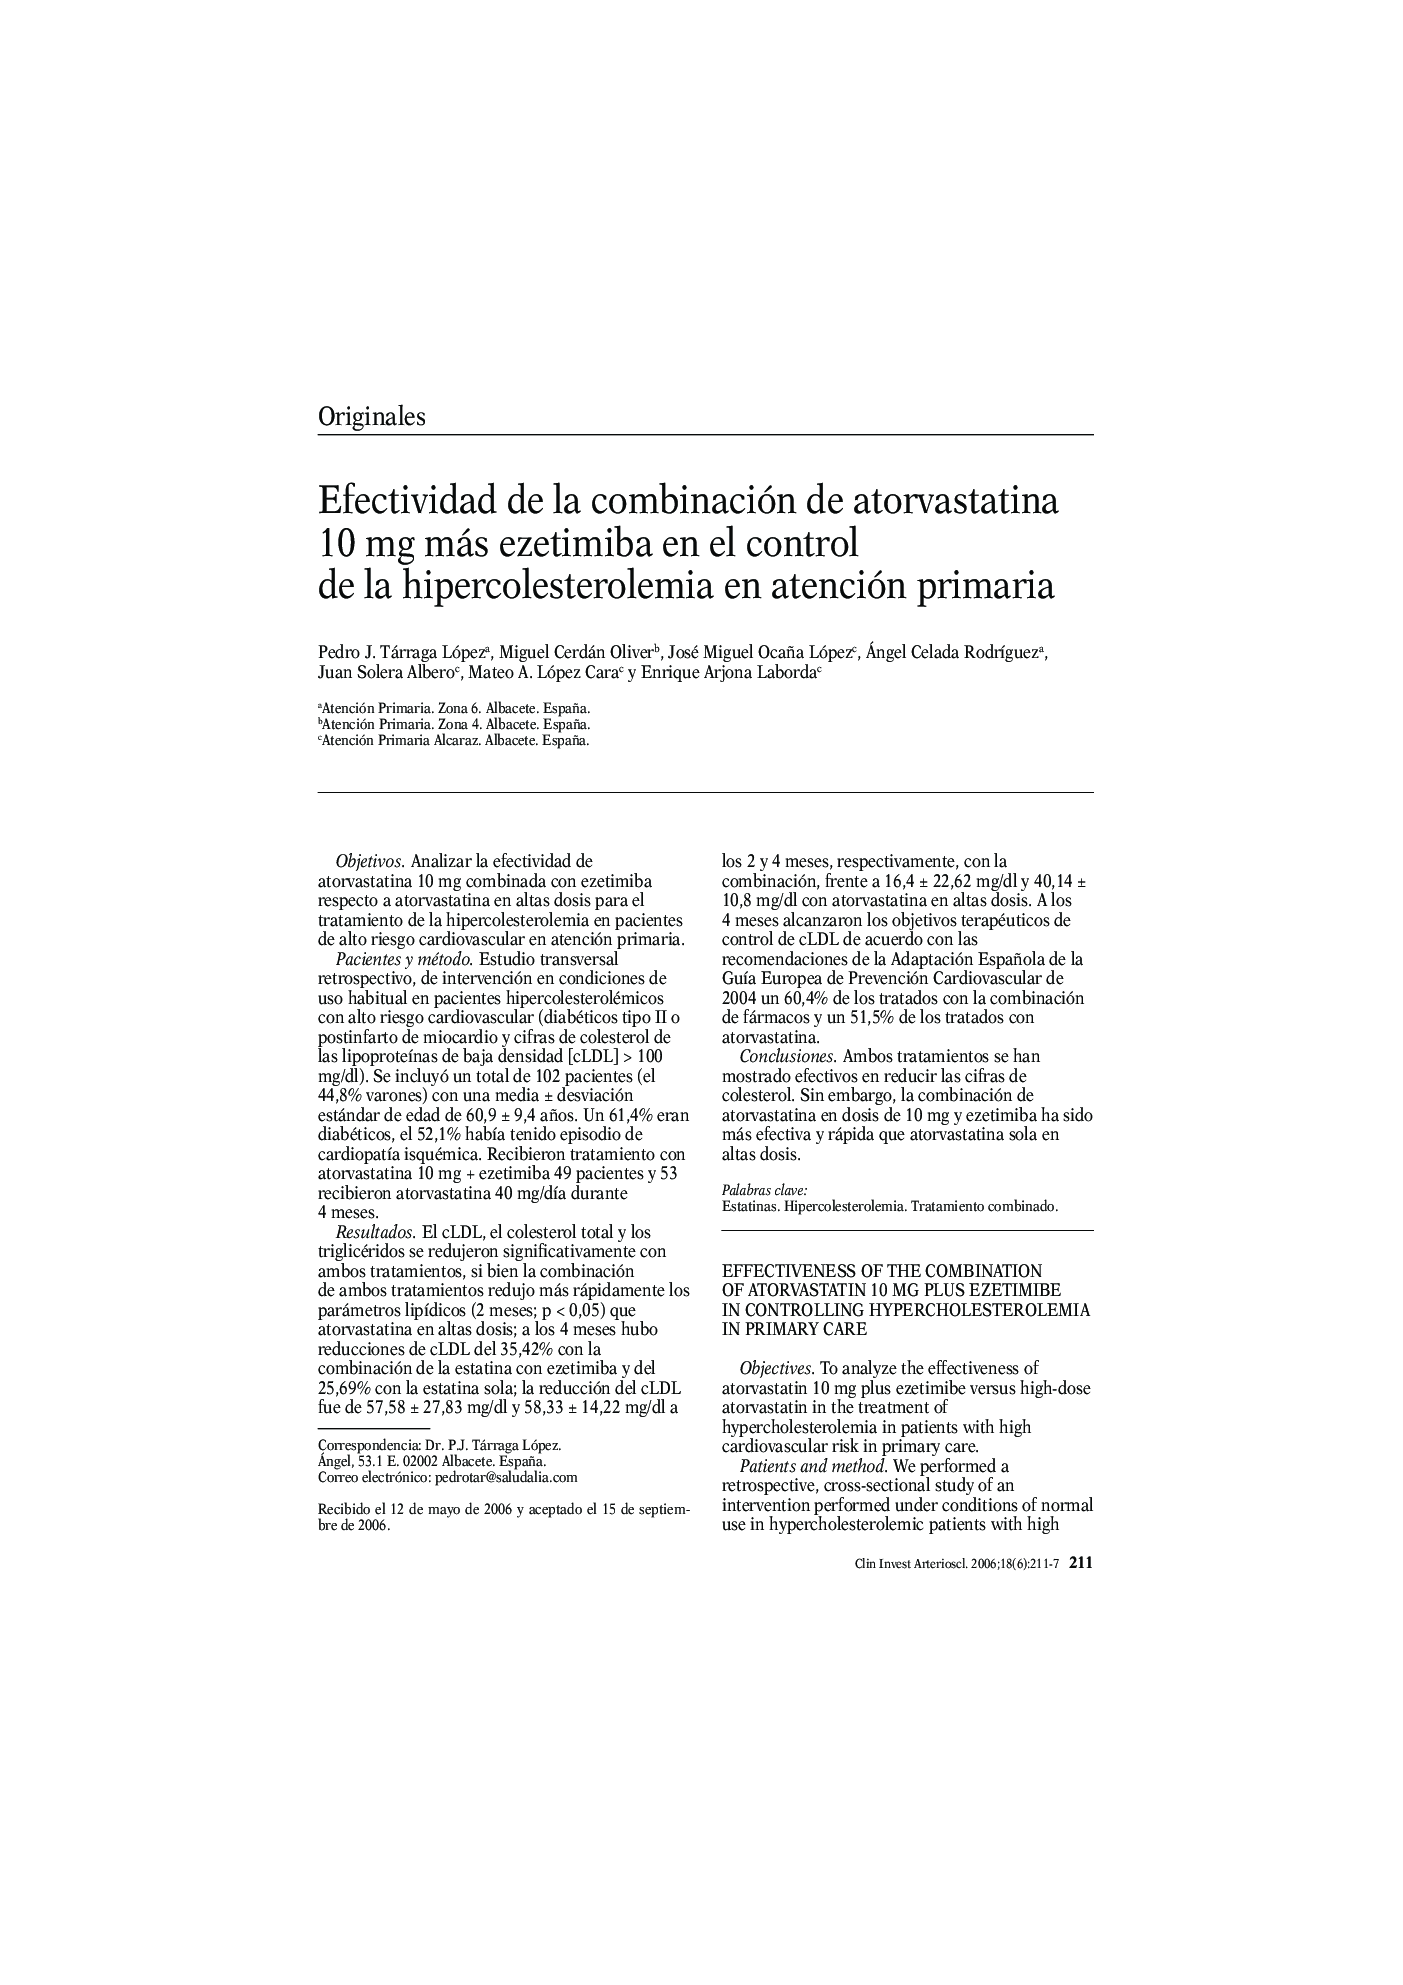 Efectividad de la combinación de atorvastatina 10 mg más ezetimiba en el control de la hipercolesterolemia en atención primaria